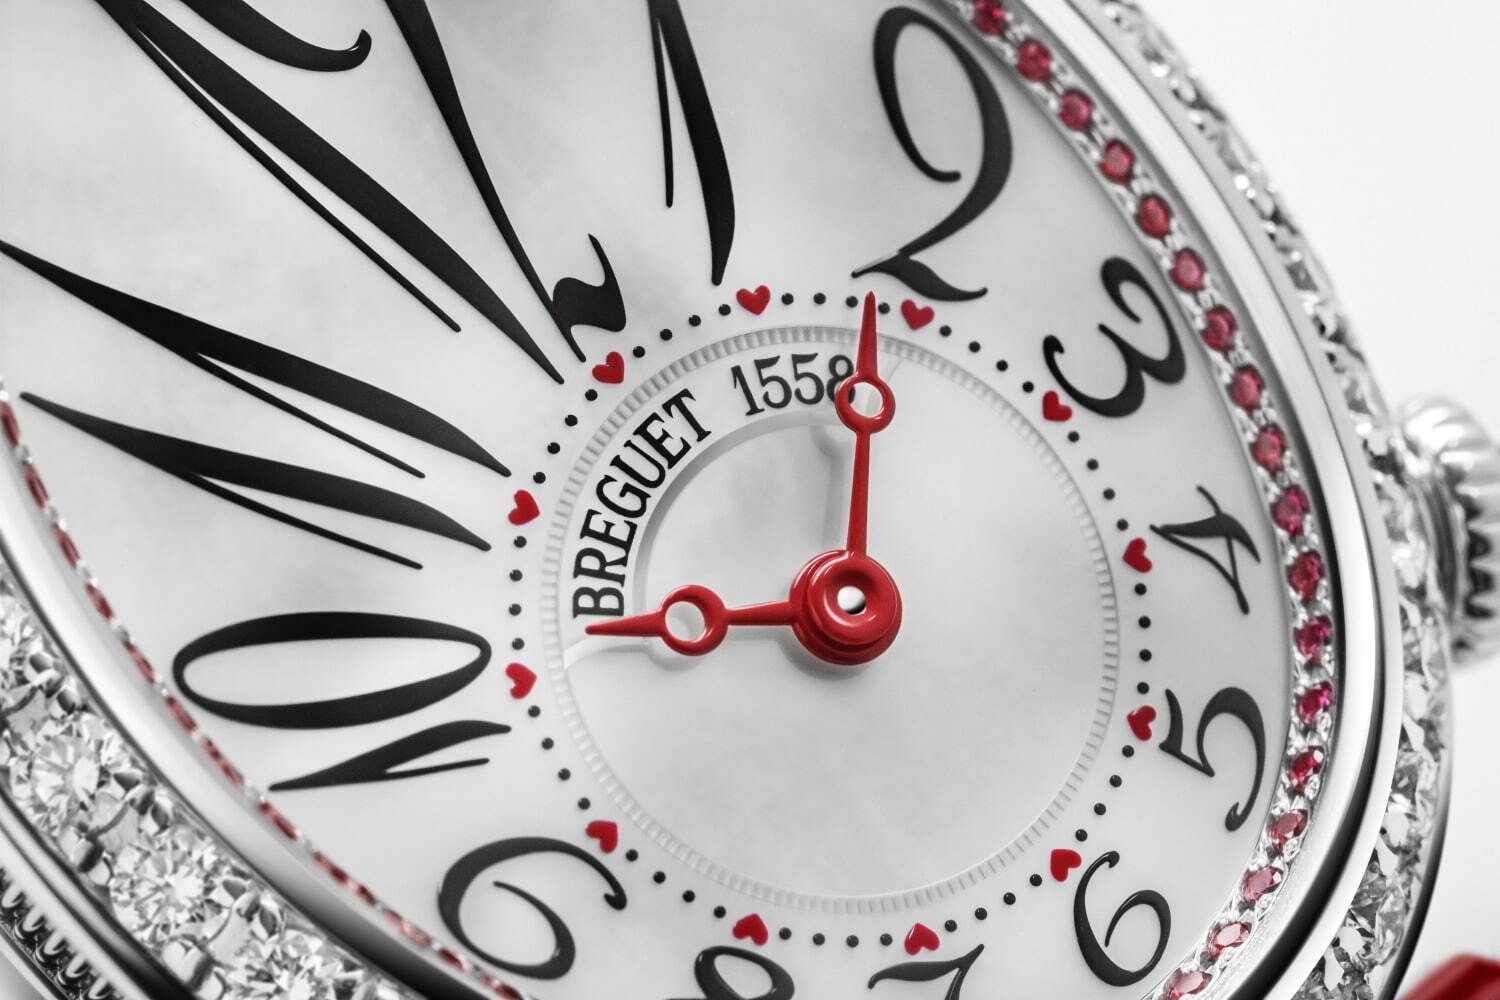 ブレゲ「クイーン・オブ・ネイプルズ」バレンタインデー腕時計、煌めく